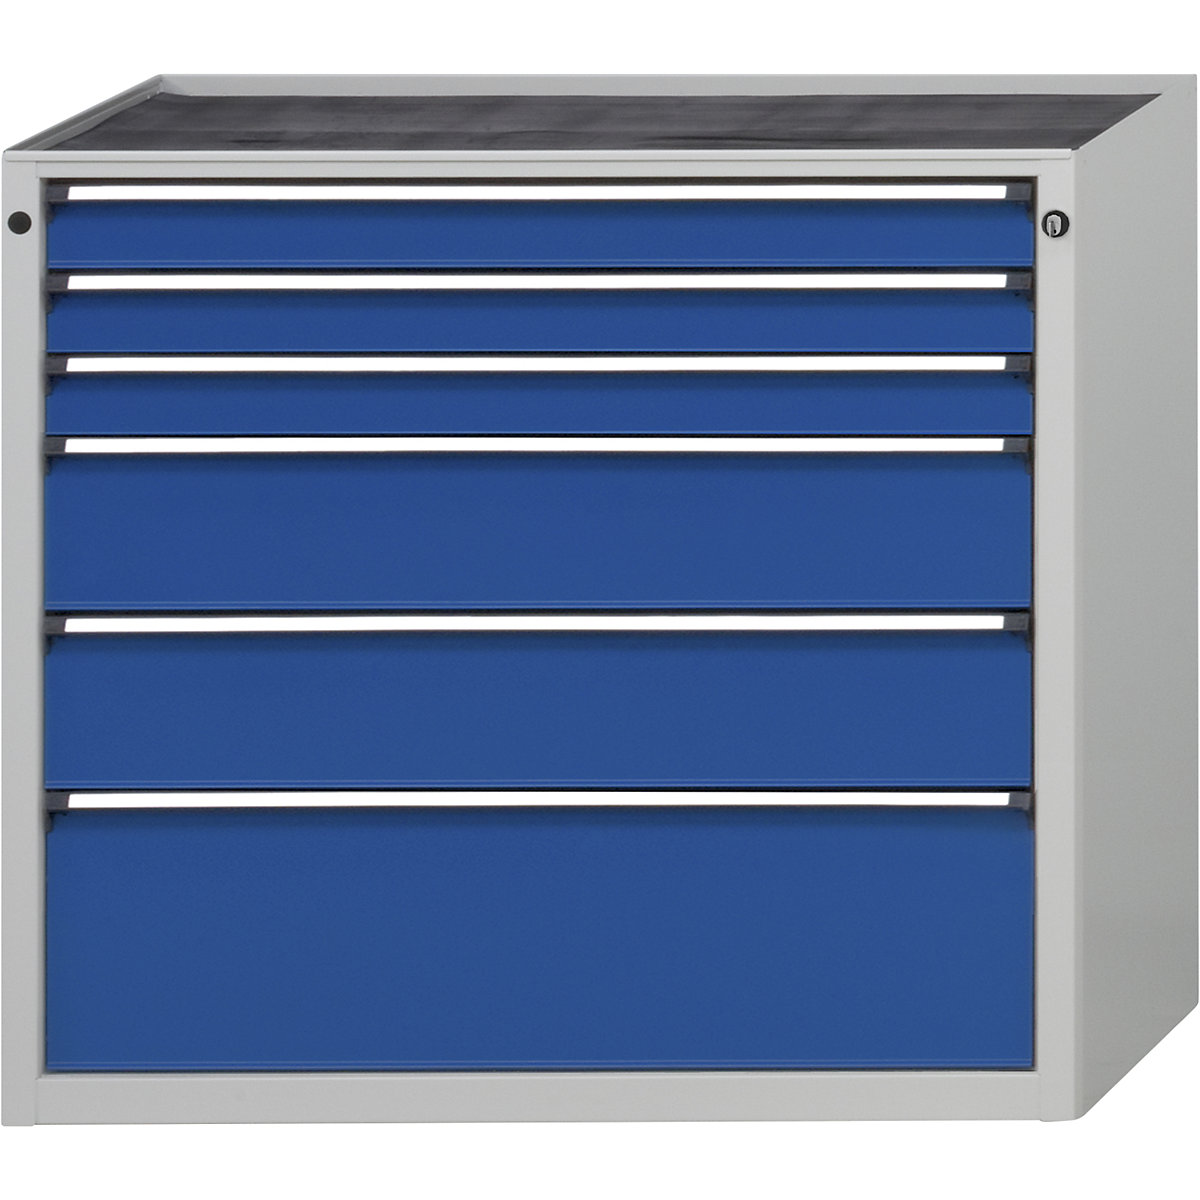 Szafka szufladowa bez blatu – ANKE, szerokość 1060 mm, nośność szuflady 200 kg, 6 szuflad, front niebieski gencjanowy-3